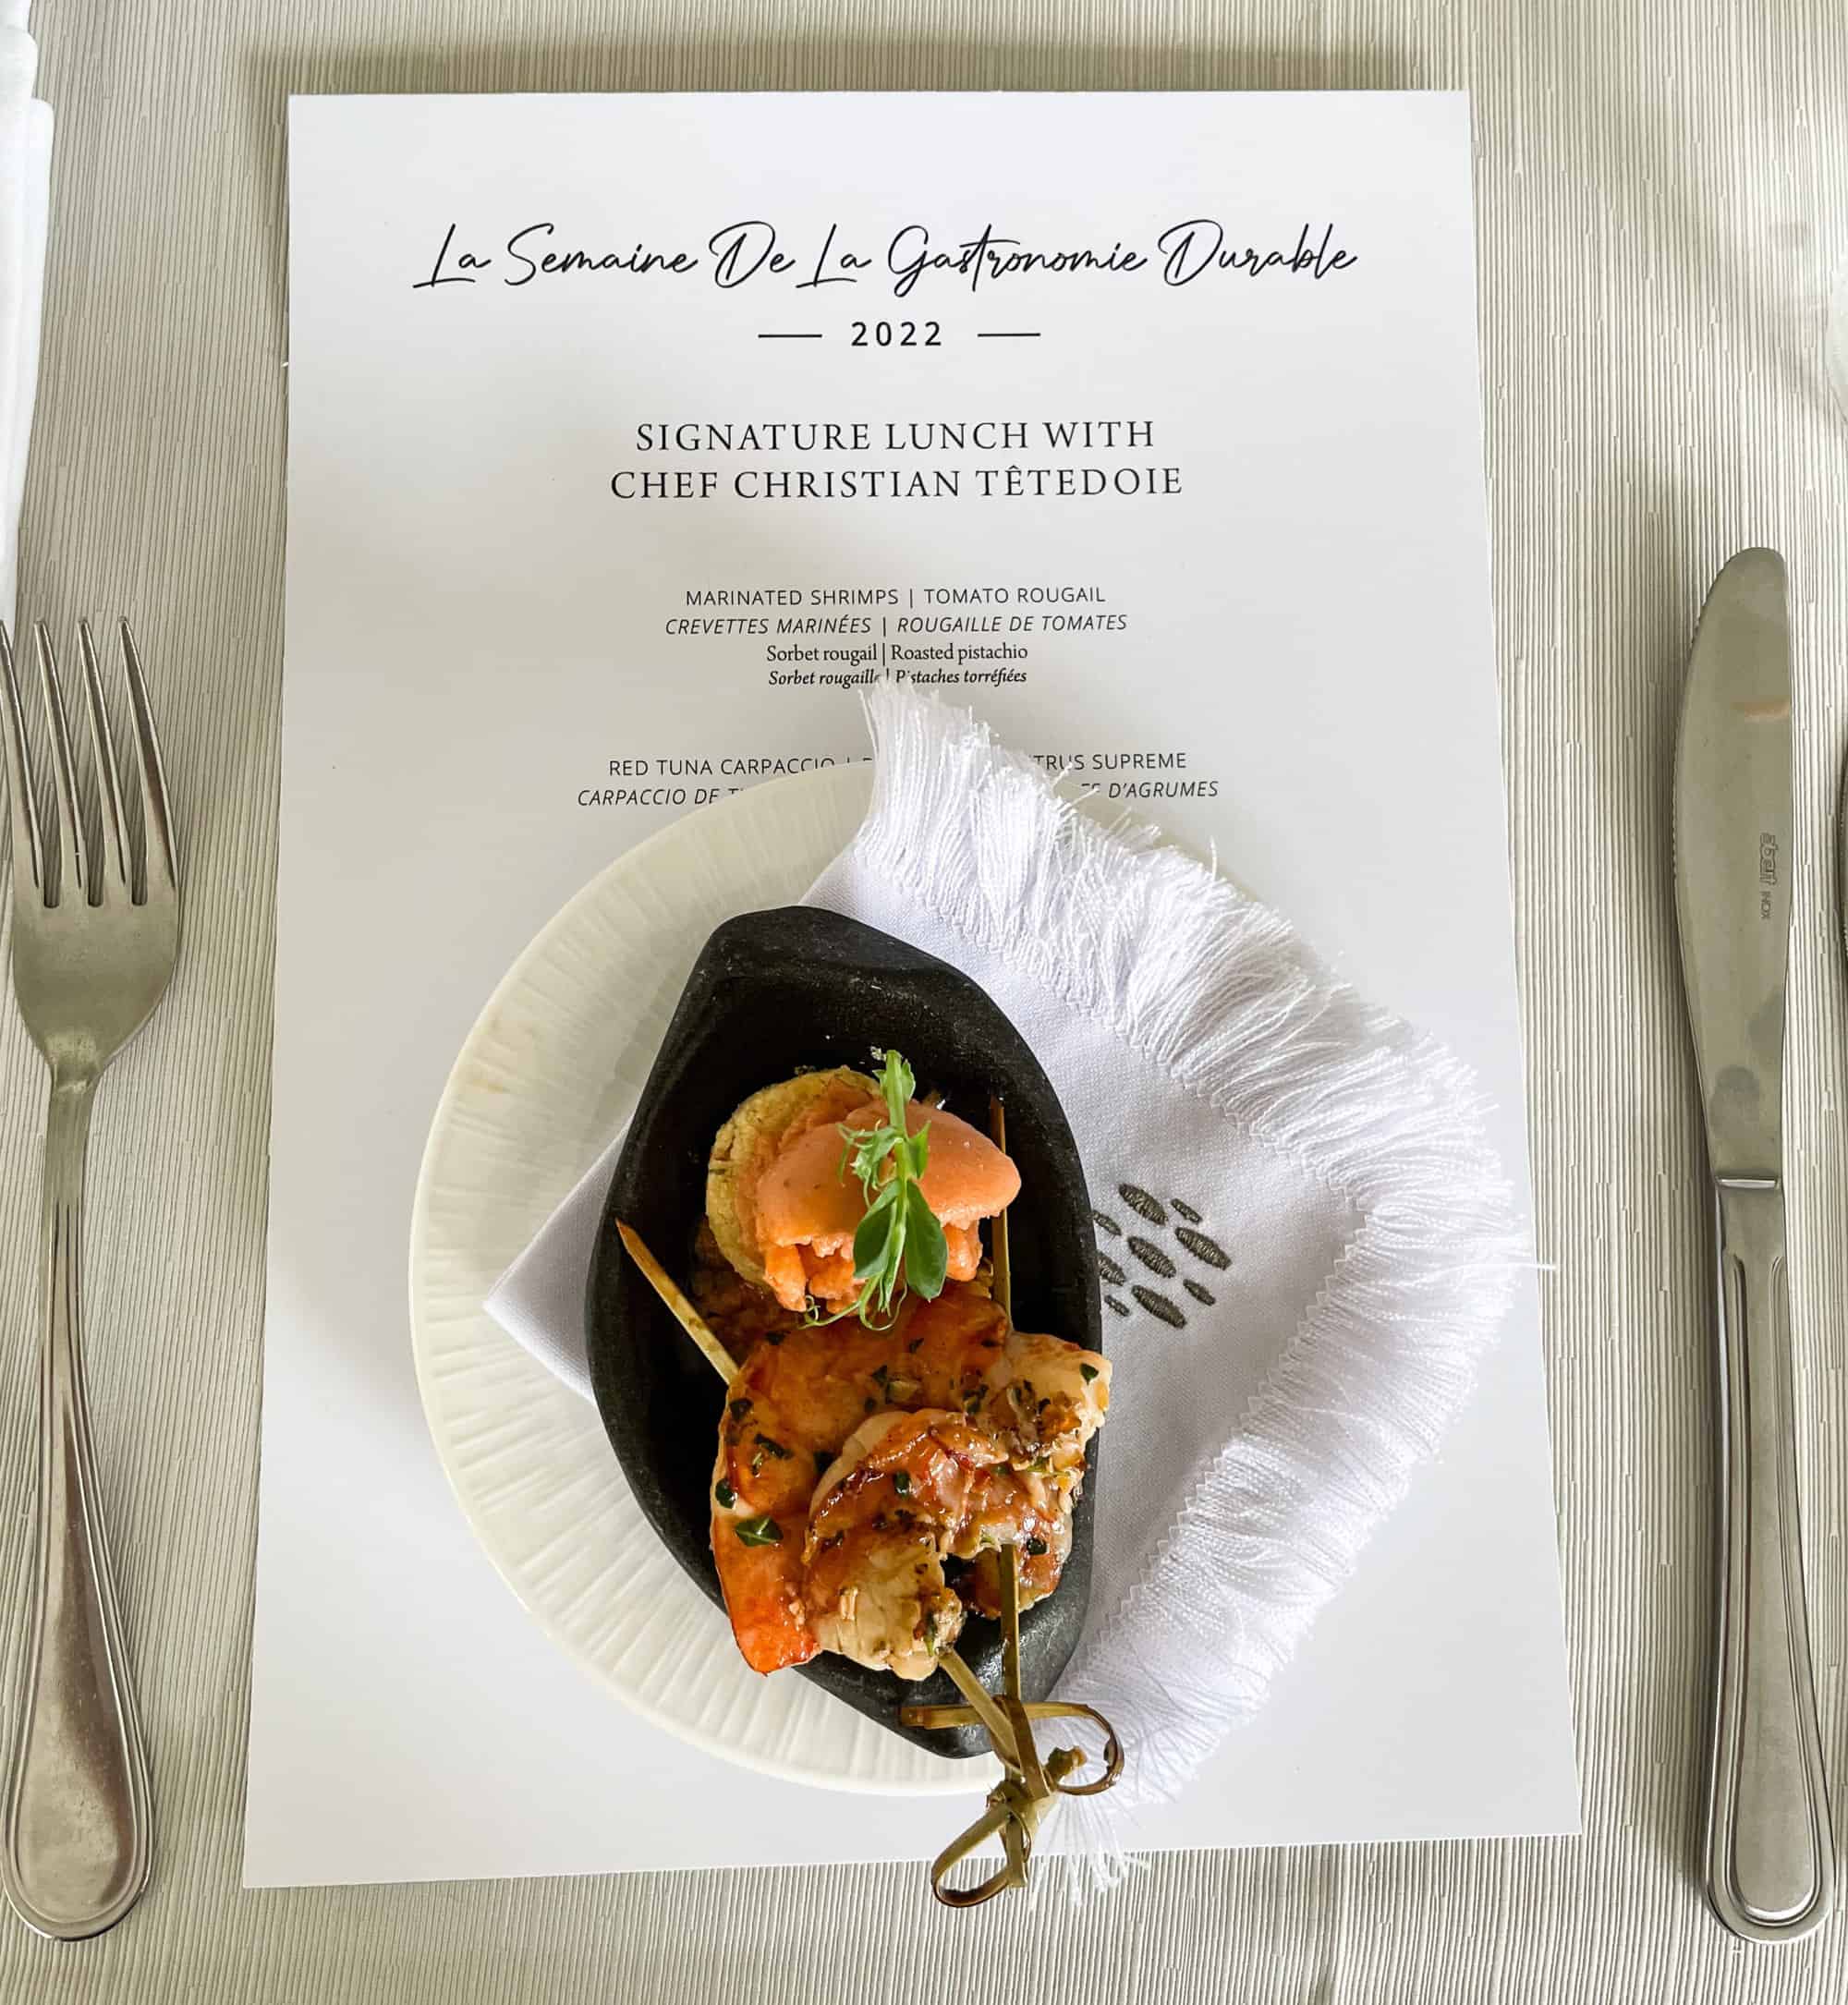 Mauritius - Telfair Heritage Resort - La semaine de la gastronomie durable signature lunch marinated shrimps with tomato rougail